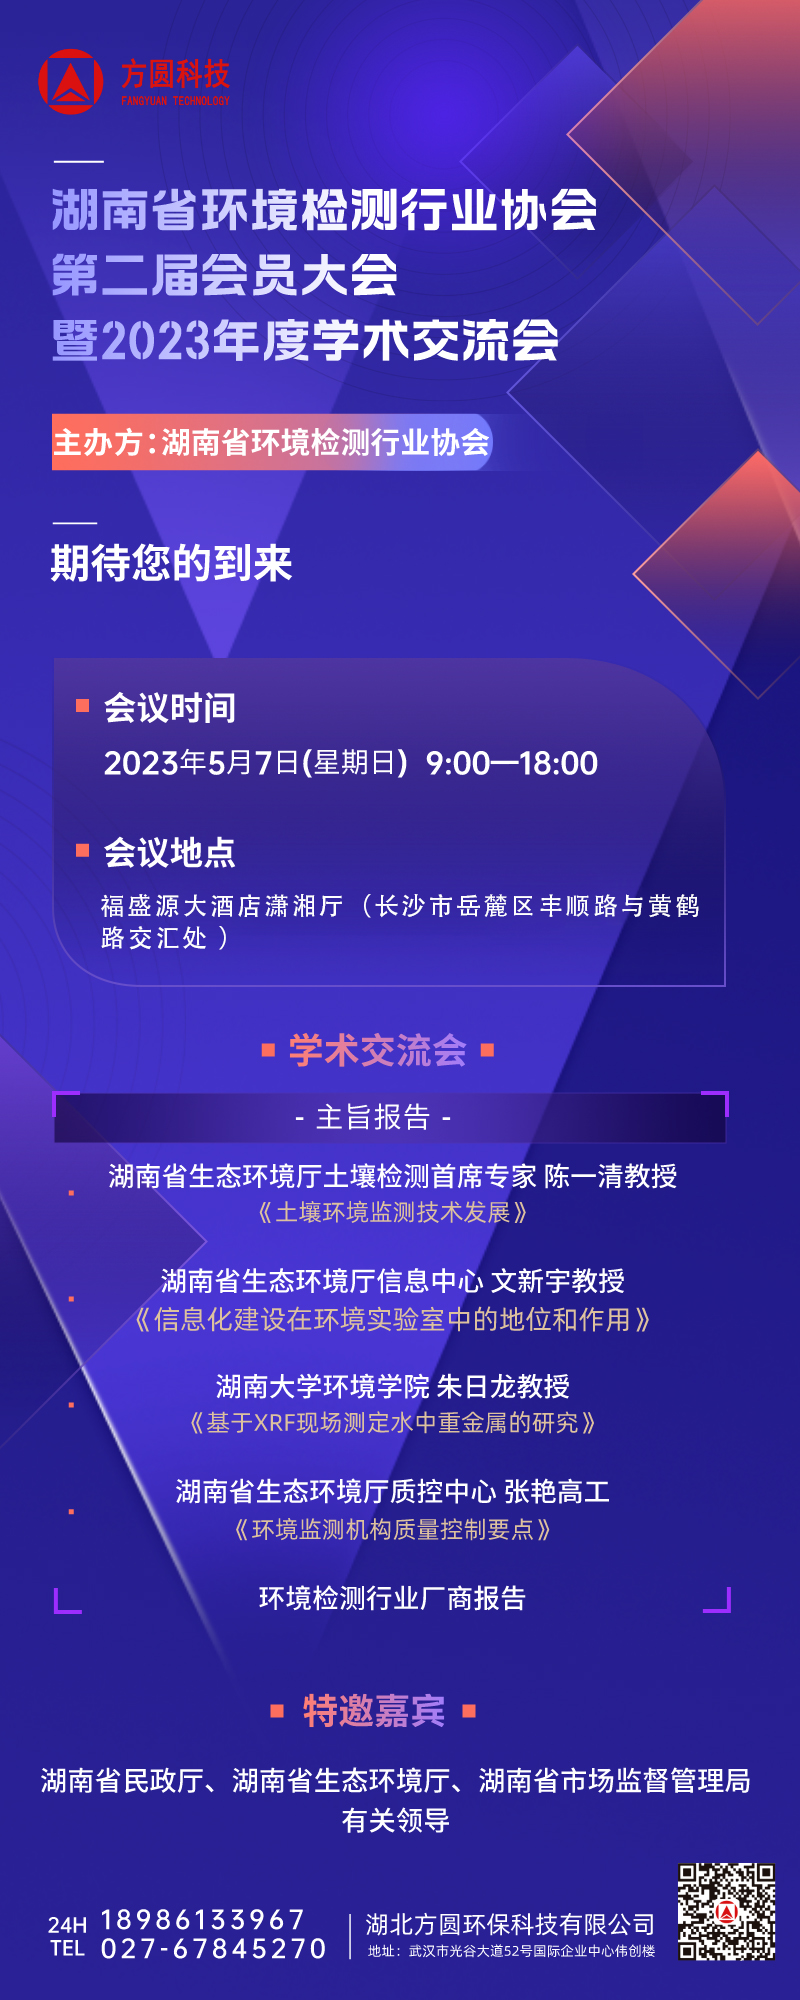 湖南省環境檢測行業協會第二屆會員代表大會暨 2023 年度學術交流會即將召開